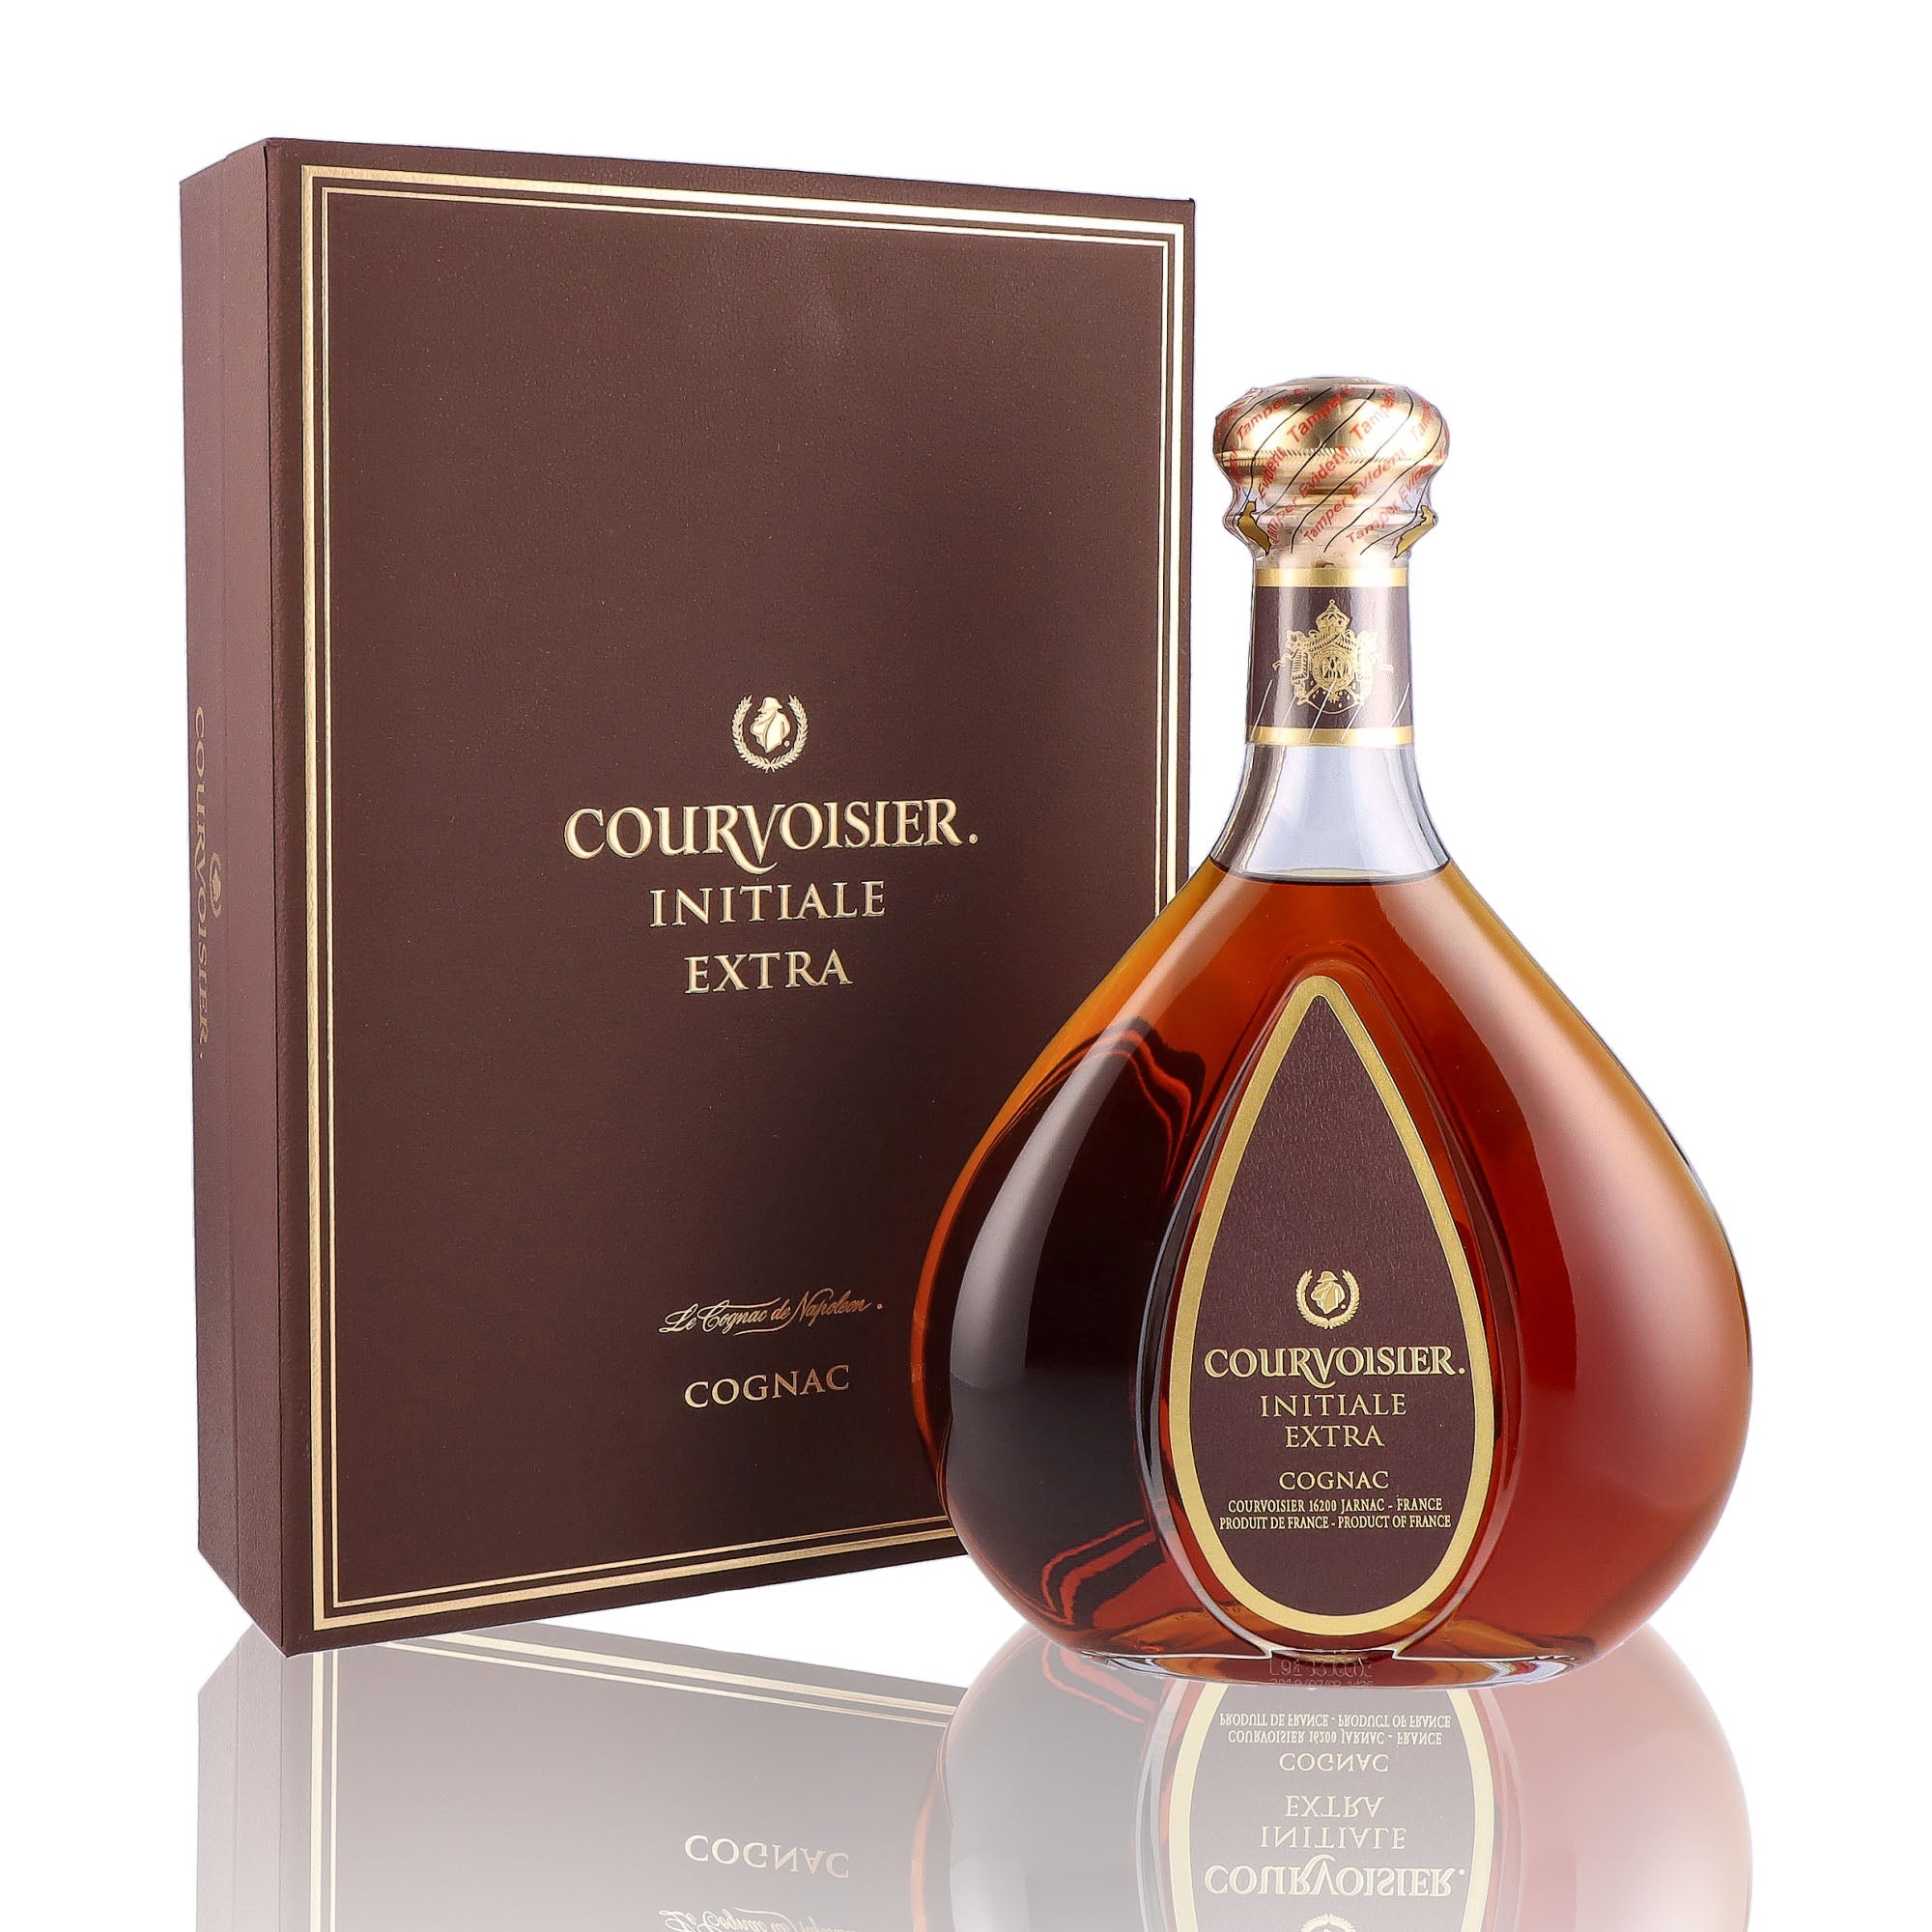 Une bouteille de Cognac, de la marque Courvoisier, nommée Initiale Extra.